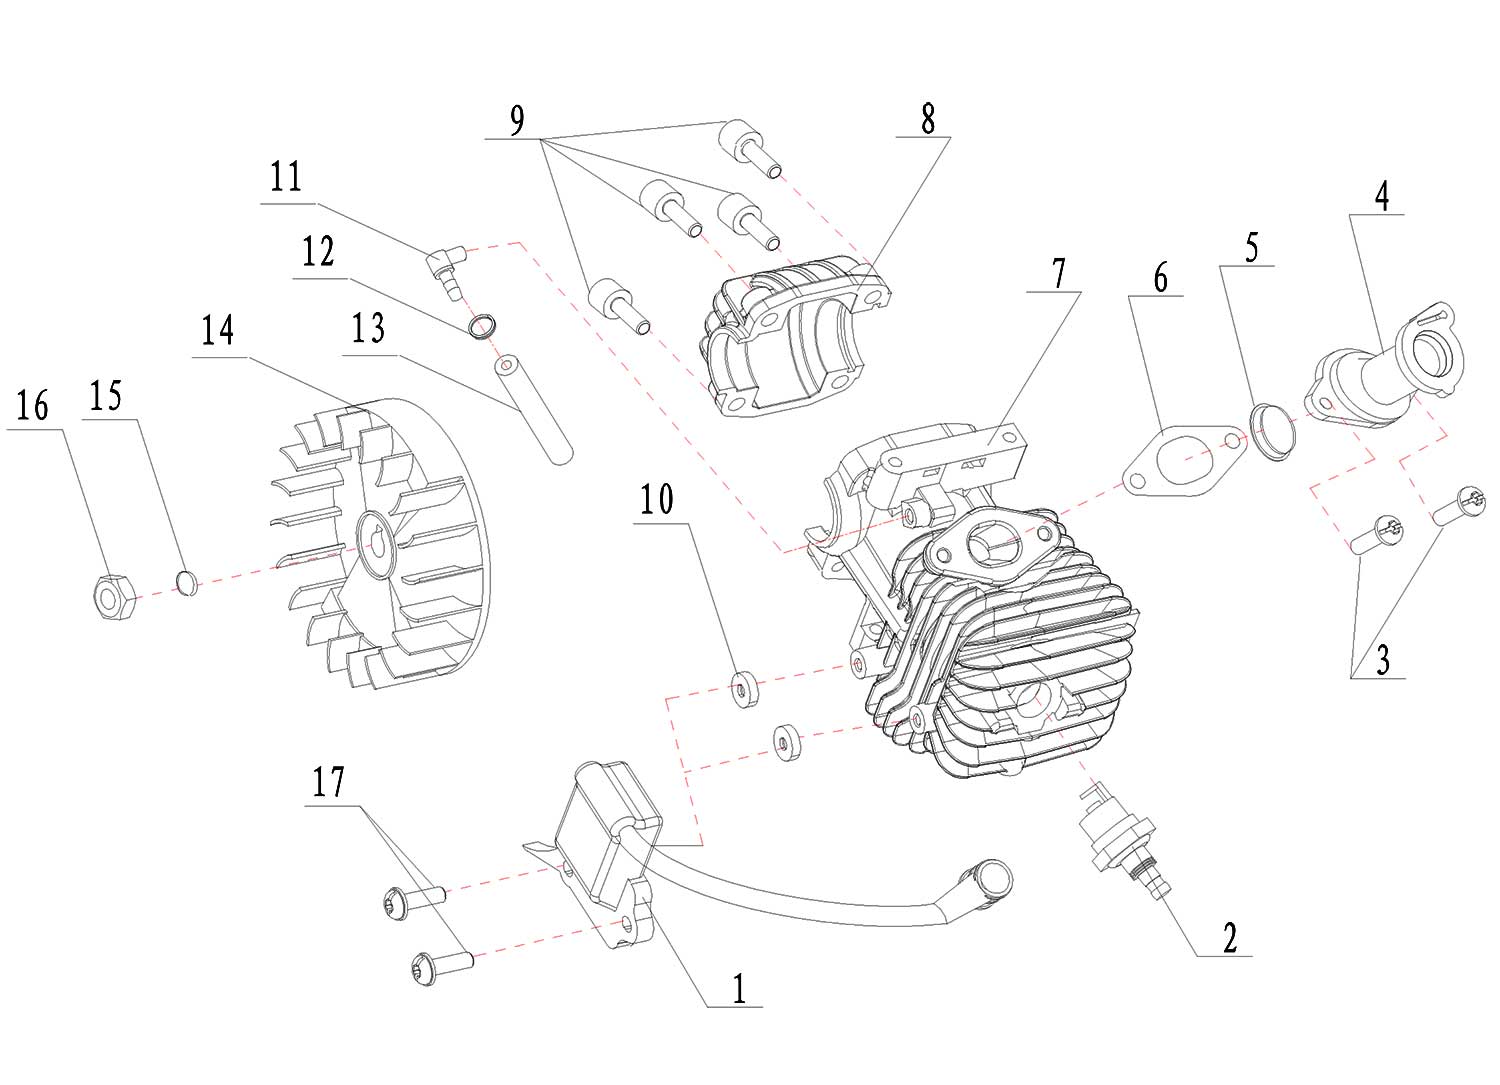 Запчасти, схема и деталировка Patriot   2512 (S) (2014) (220104500)  Цилиндр и ротор (маховик)